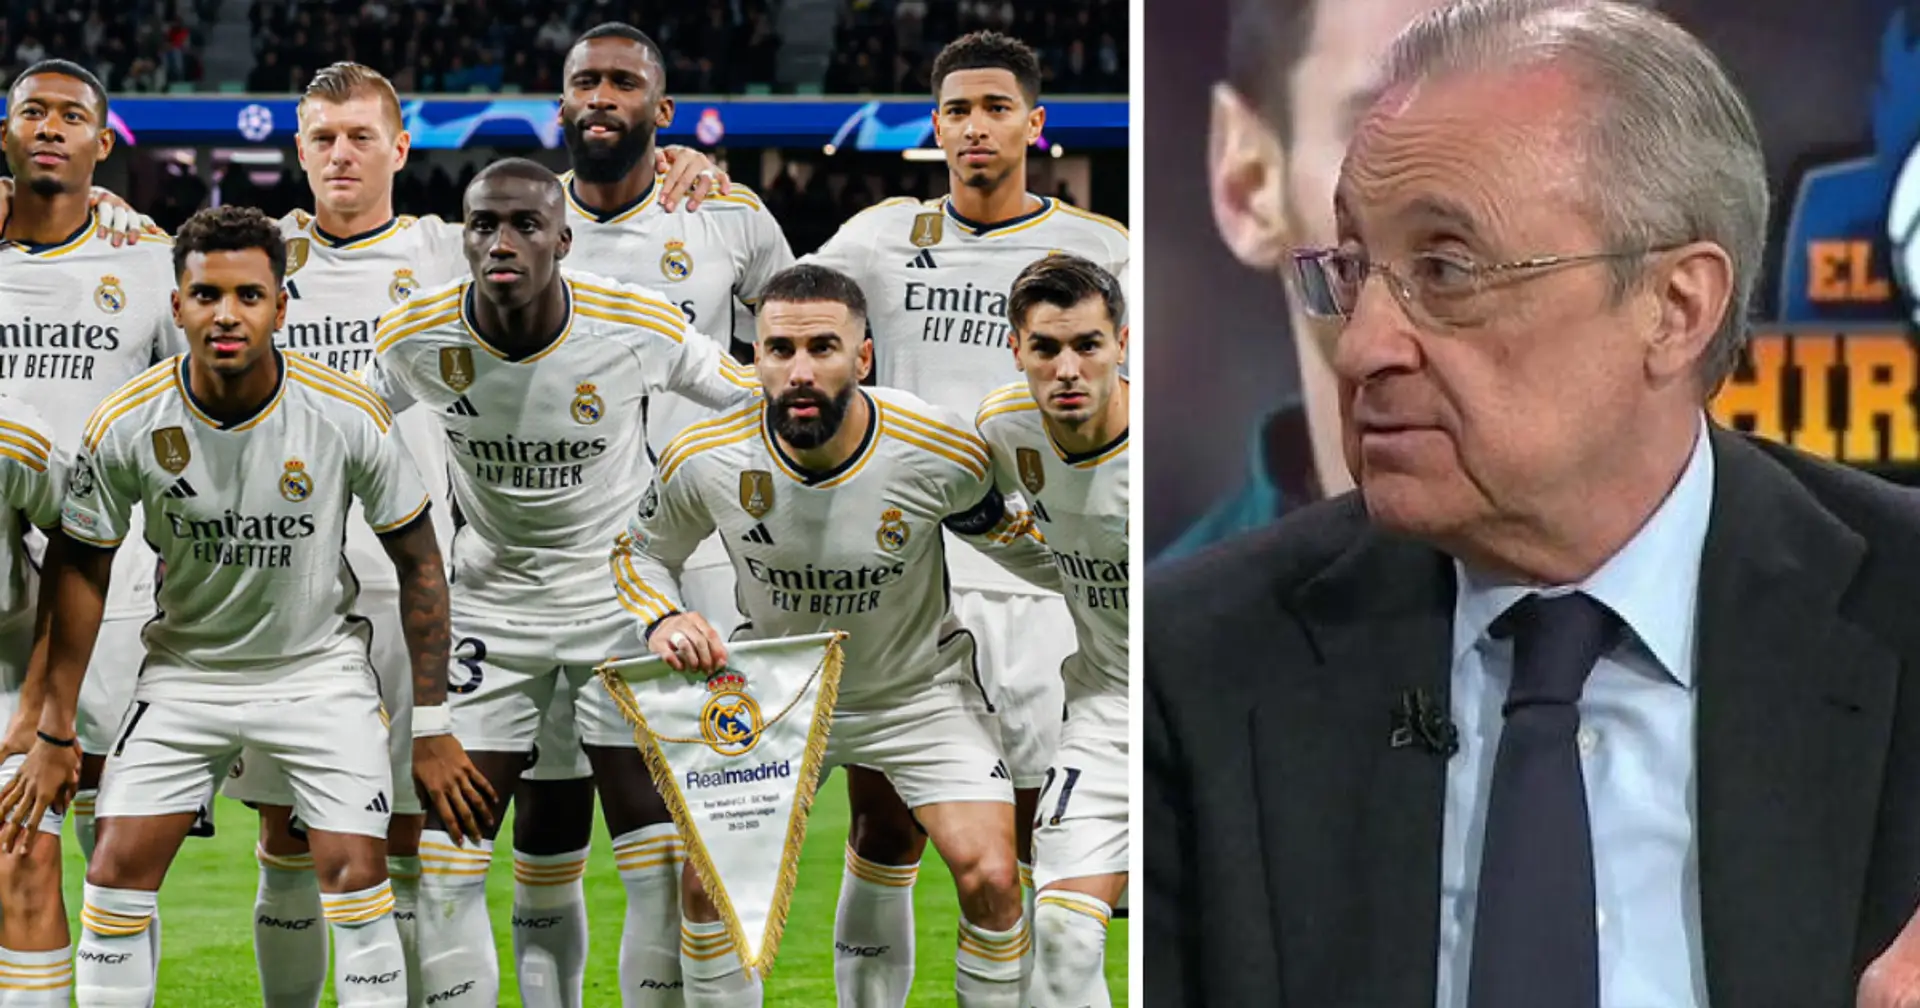 'Conversaciones esta semana': el Real Madrid acelera las negociaciones contractuales con un jugador influyente